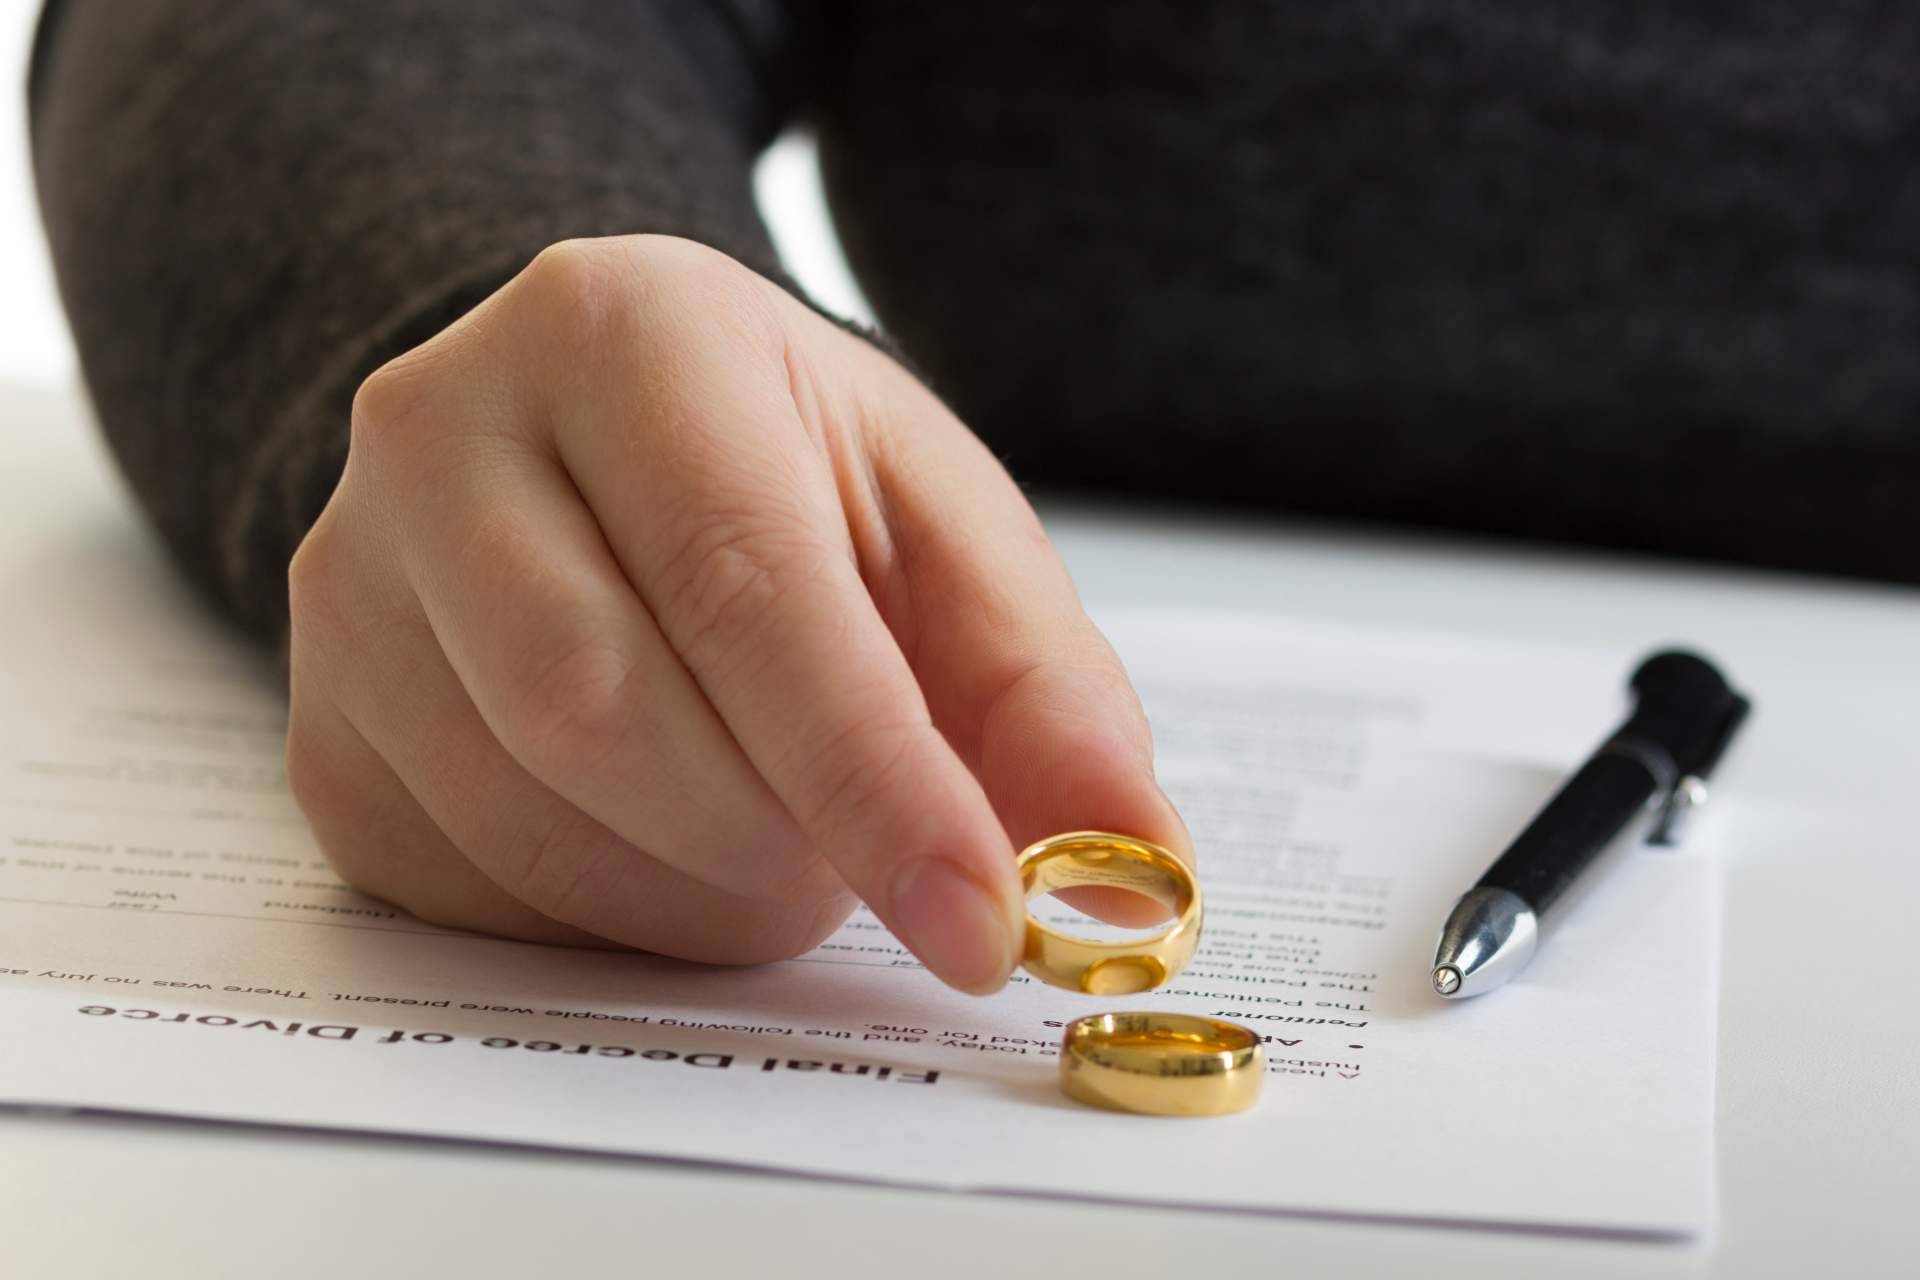 La guía del divorcio express 2022 permite llevar a cabo un divorcio express con hijos adecuadamente